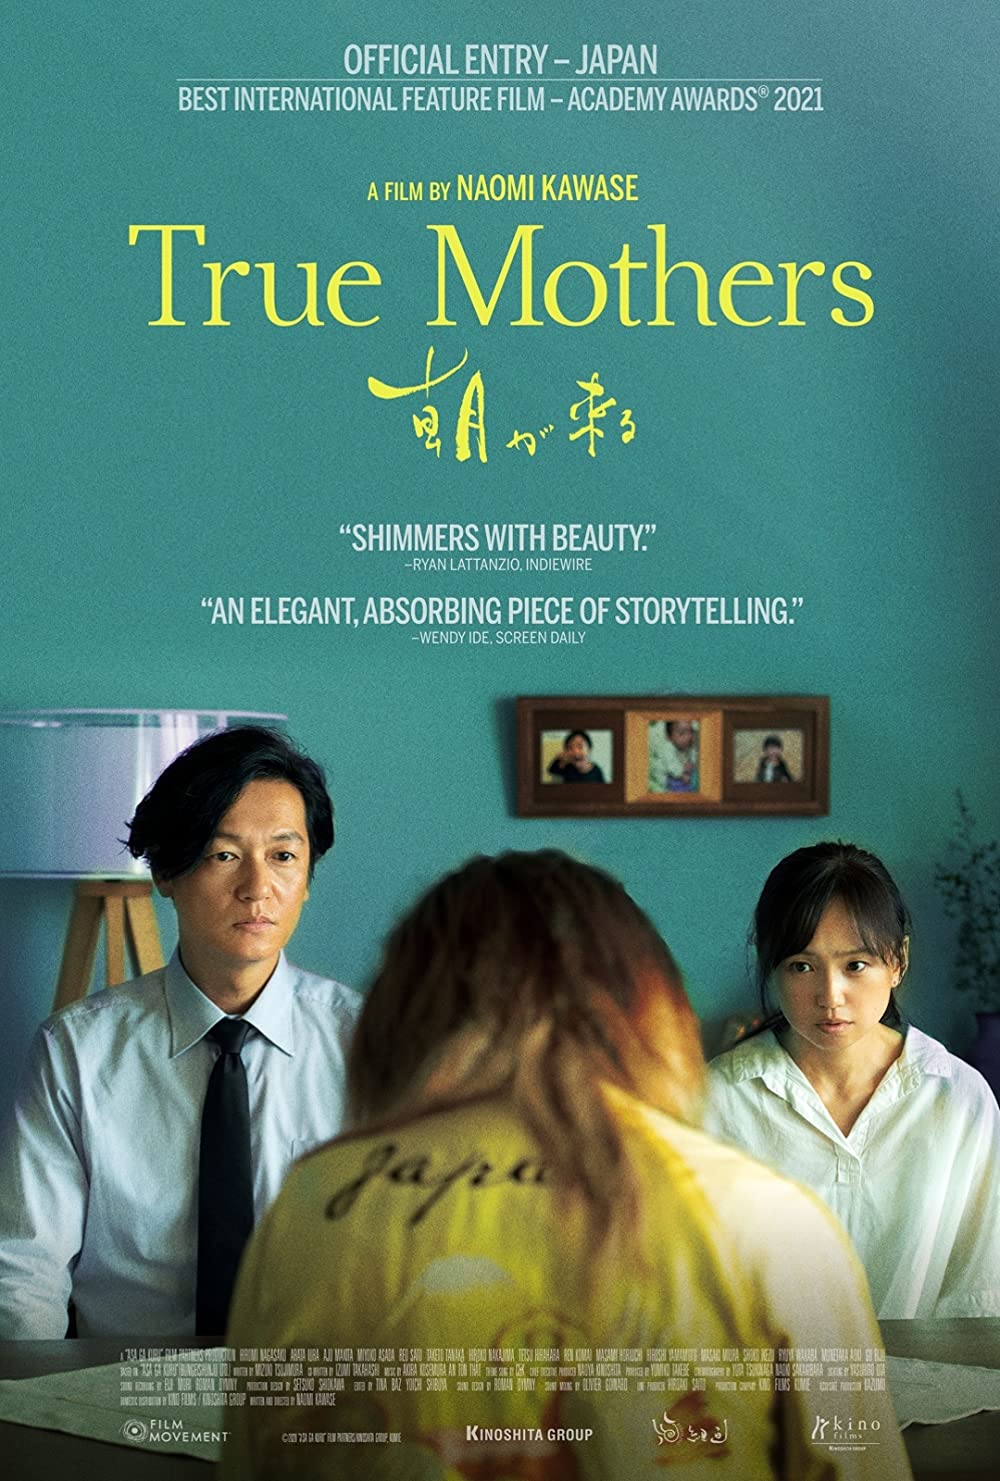 ดูหนังออนไลน์ฟรี True Mothers (2020) ทรู มาเธอส์ หนังเต็มเรื่อง หนังมาสเตอร์ ดูหนังHD ดูหนังออนไลน์ ดูหนังใหม่